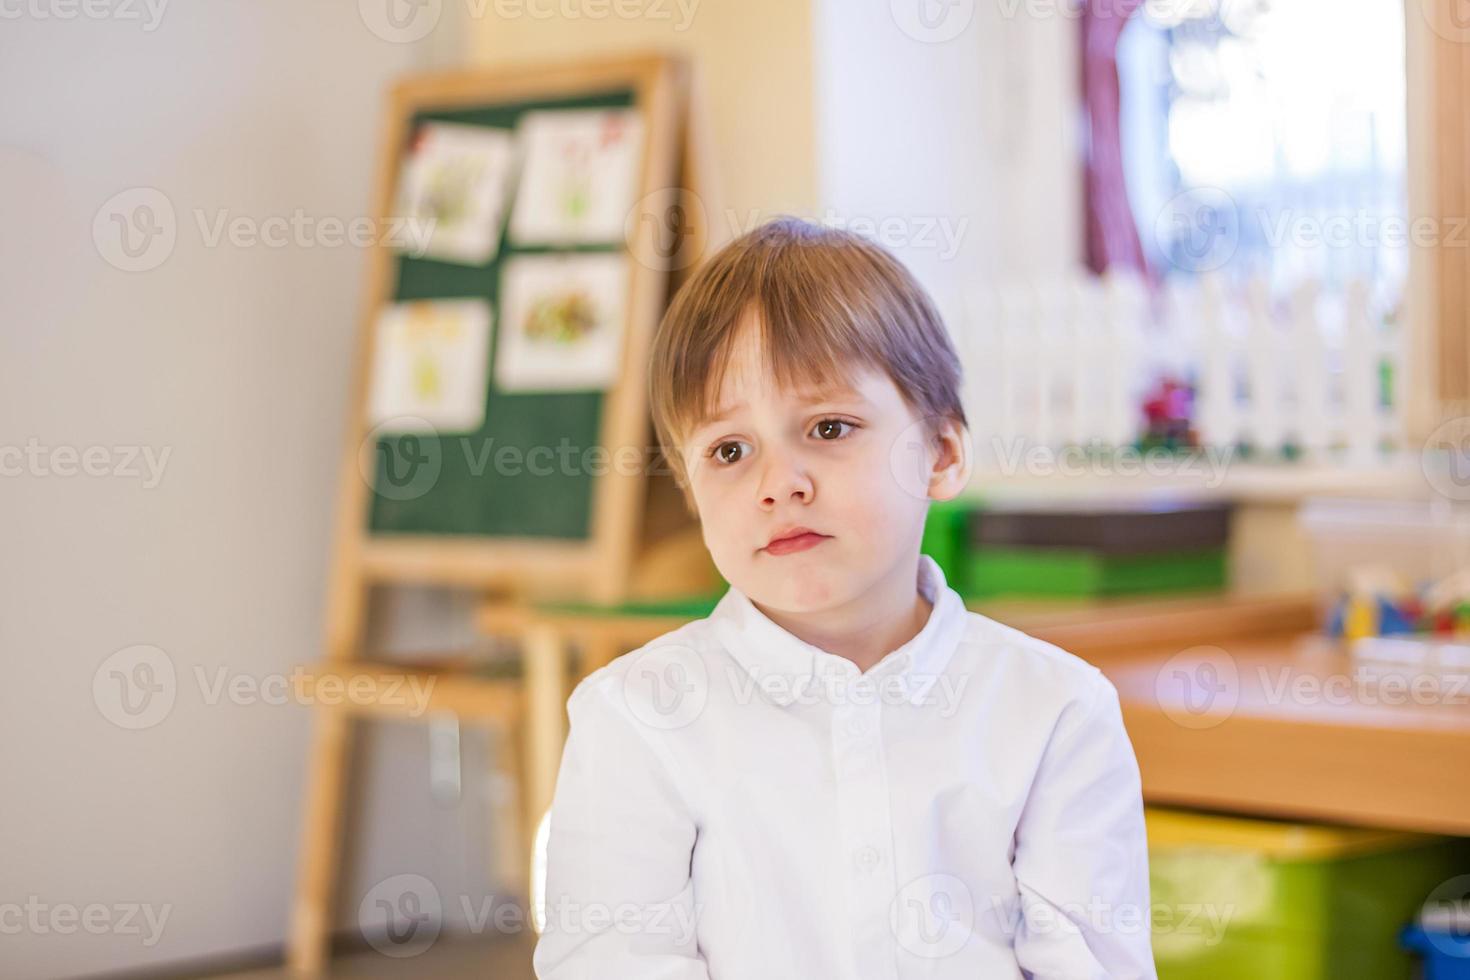 élégamment vêtu d'une chemise blanche, un petit garçon est assis dans la salle de classe pour les cours. portrait d'un garçon photo